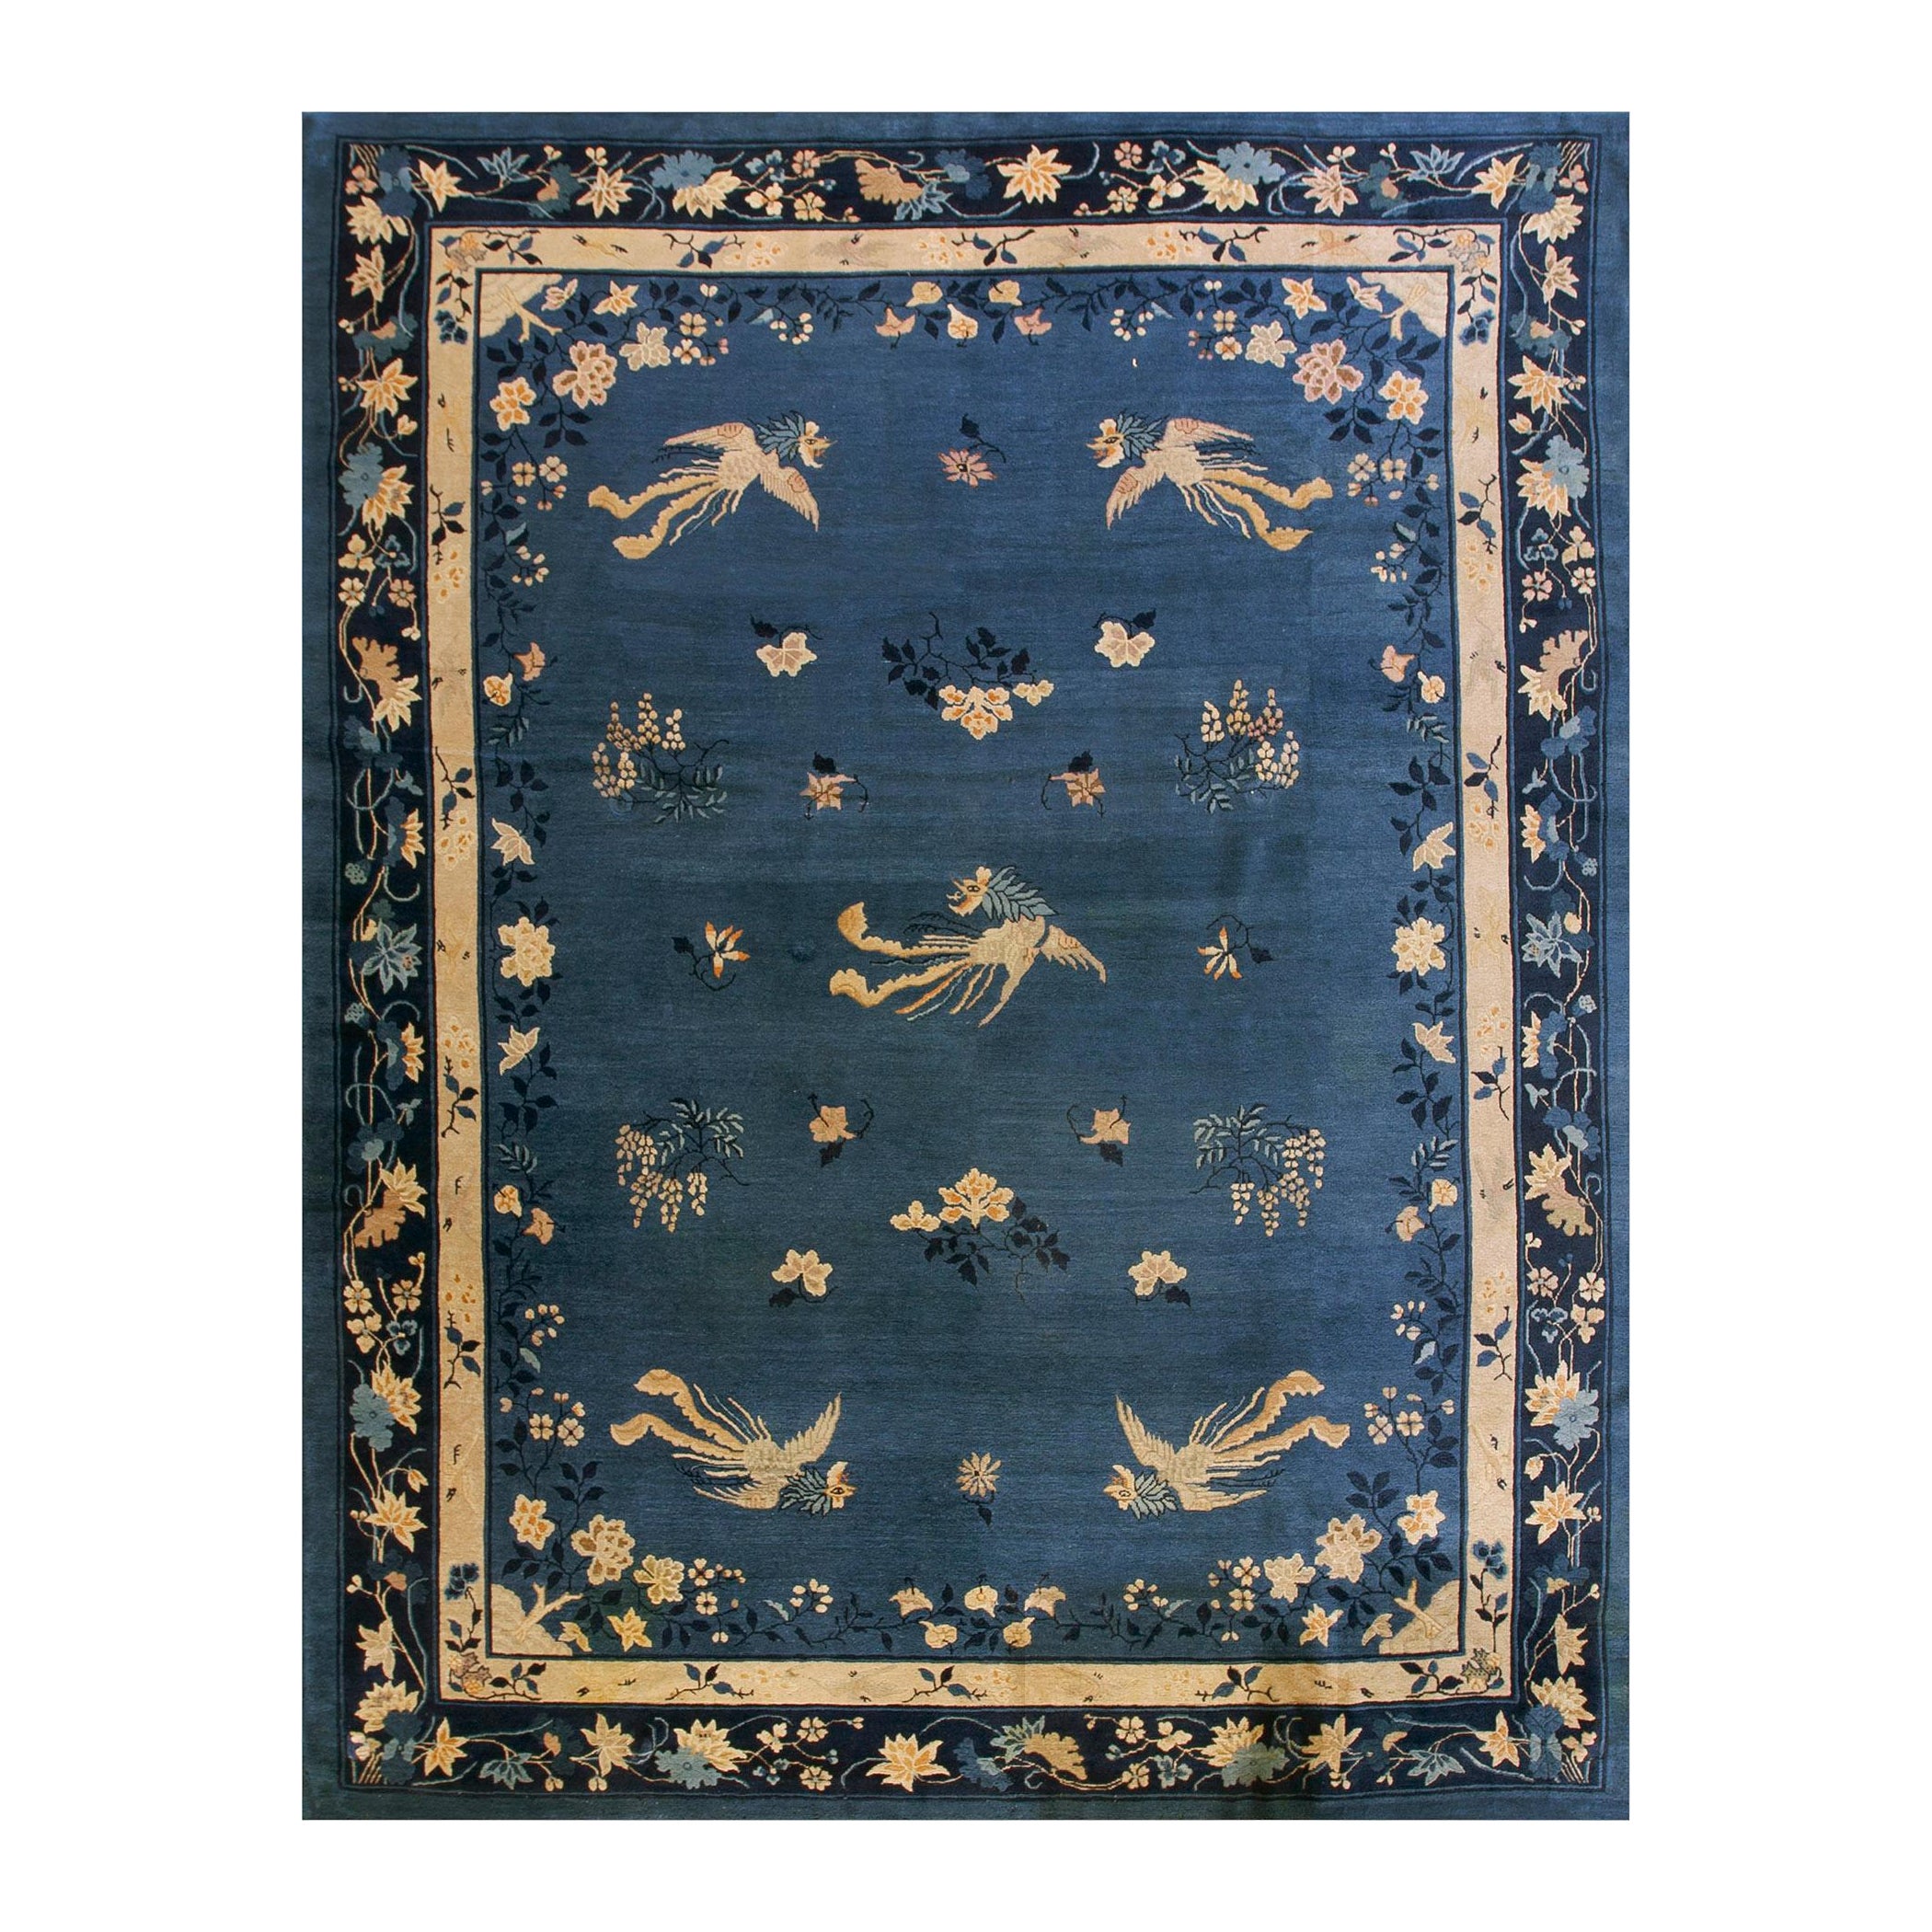 Chinesischer Peking-Teppich des frühen 20. Jahrhunderts ( 9''2 x 11''6 - 280 x 355)